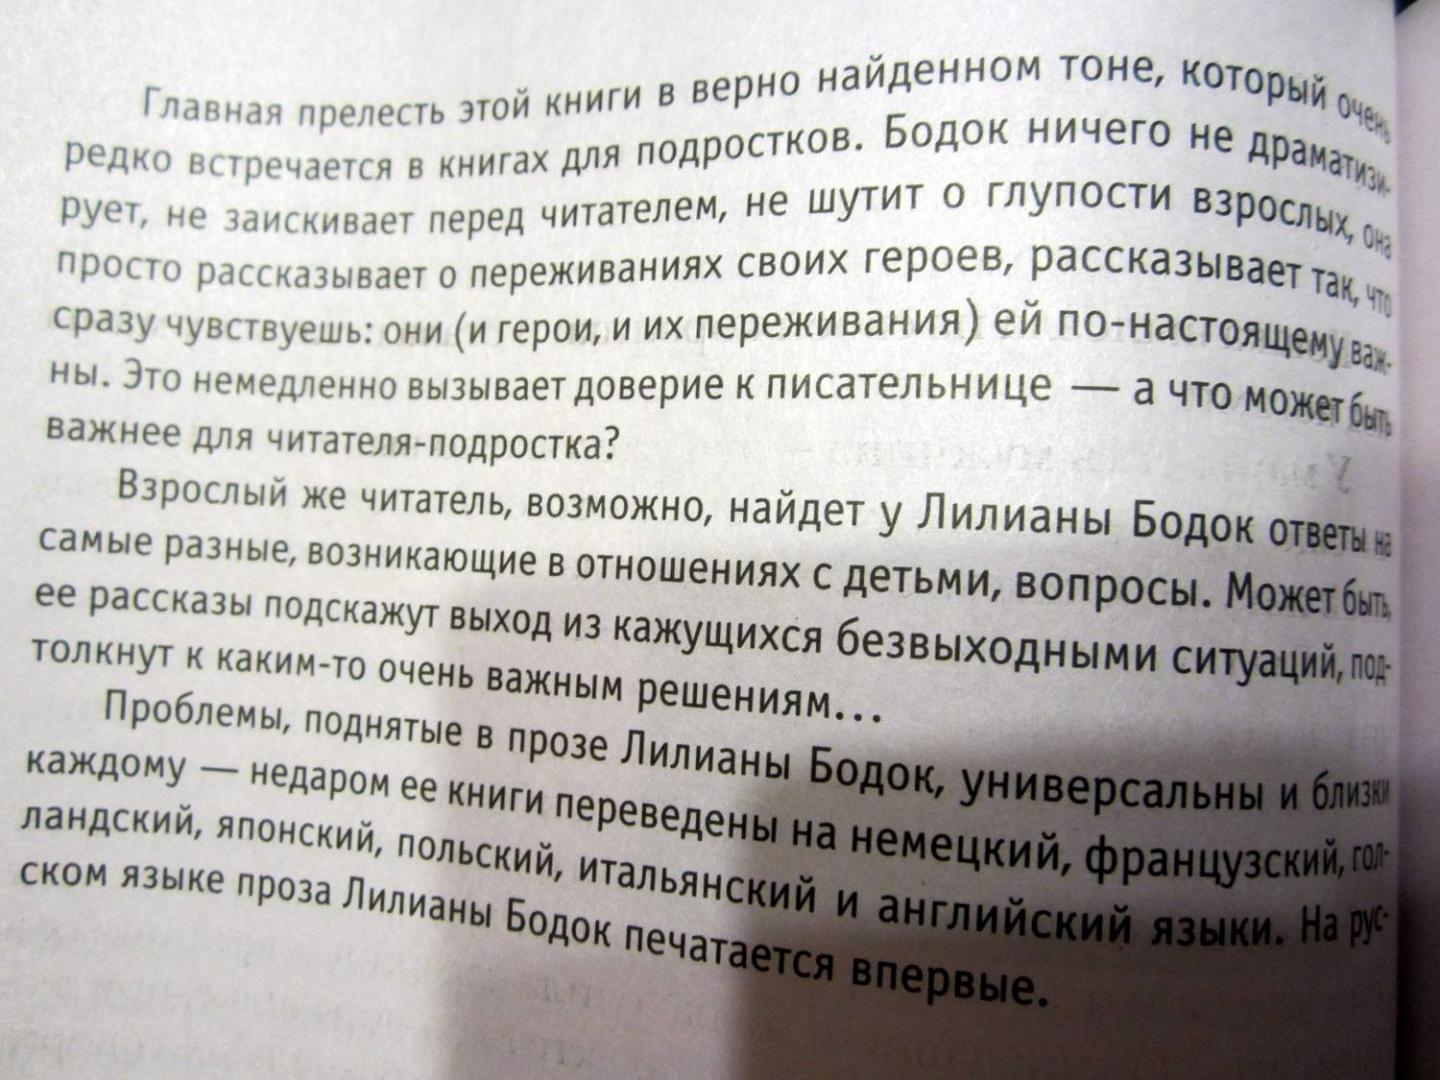 Сочинение: Польская литература и русский читатель